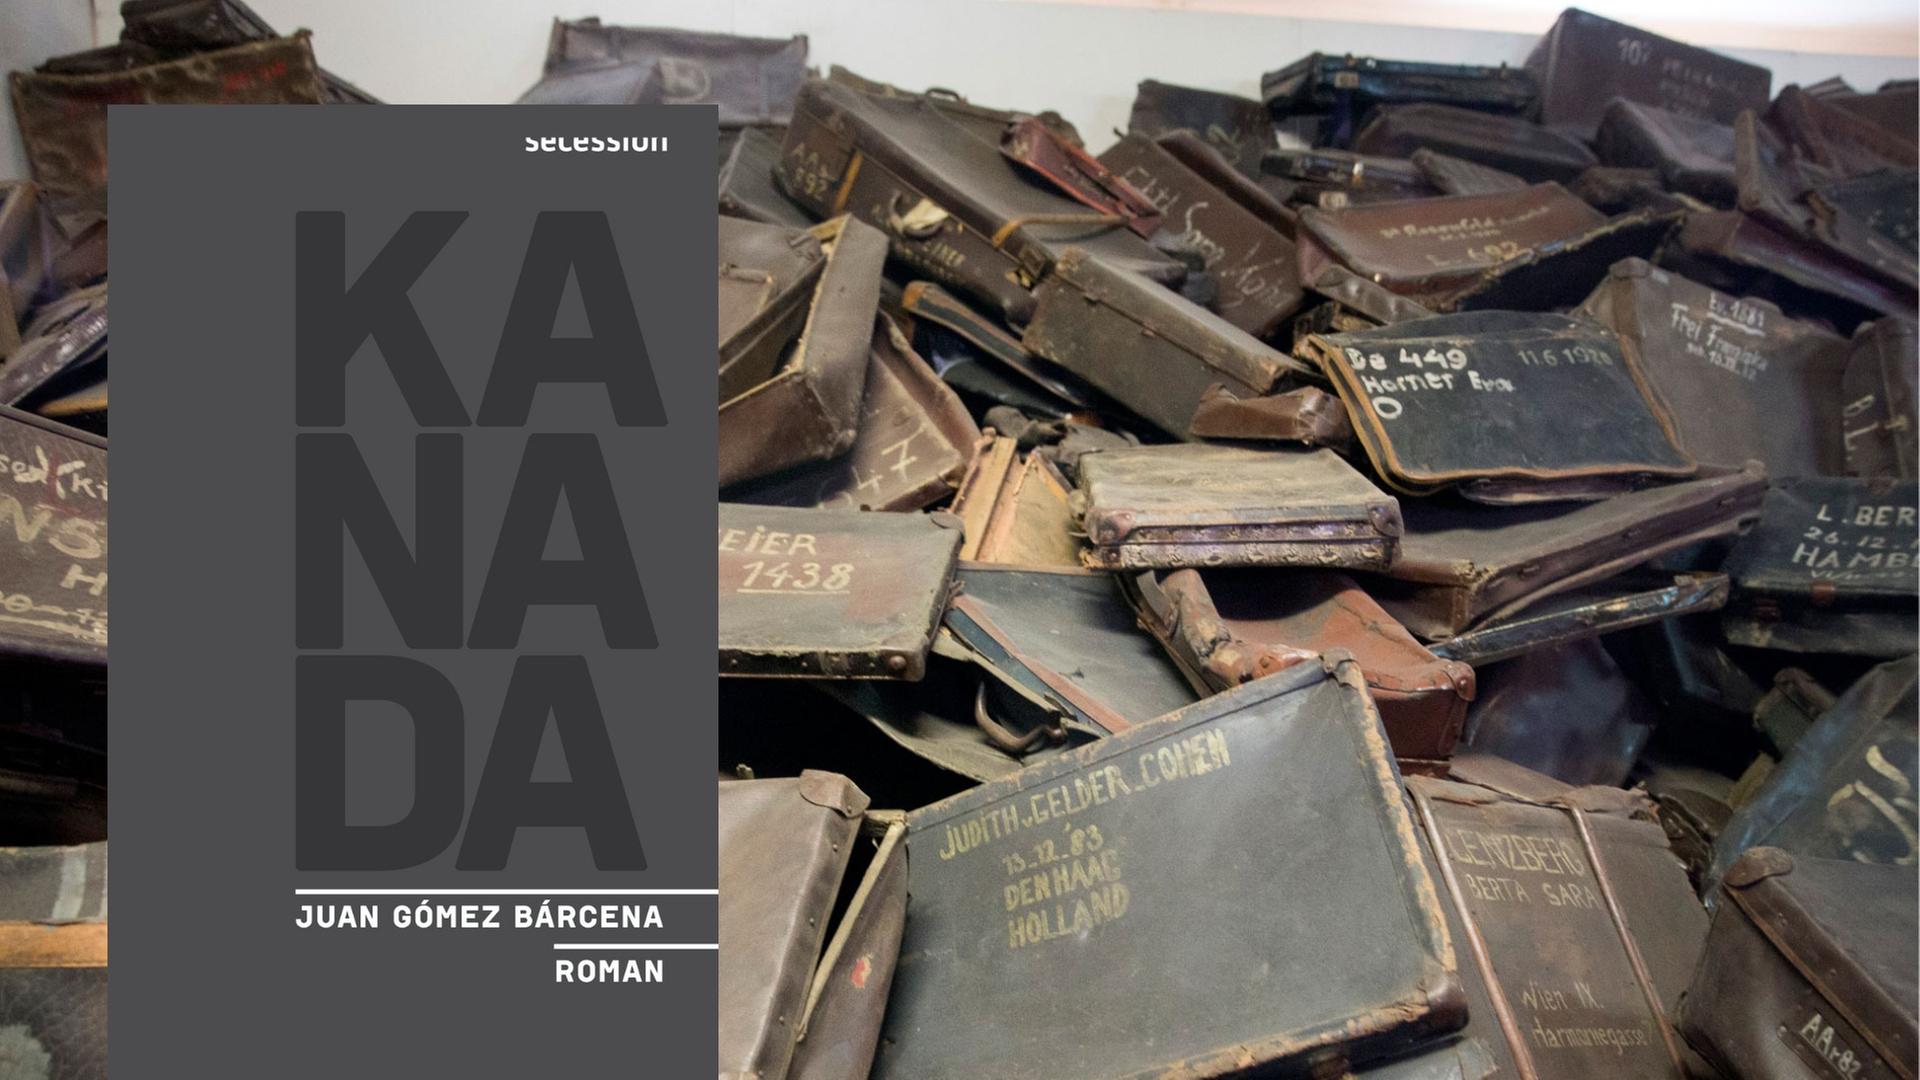 Buchcover: Juan Gomez Barcena: „Kanada“ und Kofferberg im Konzentrationslager Auschwitz